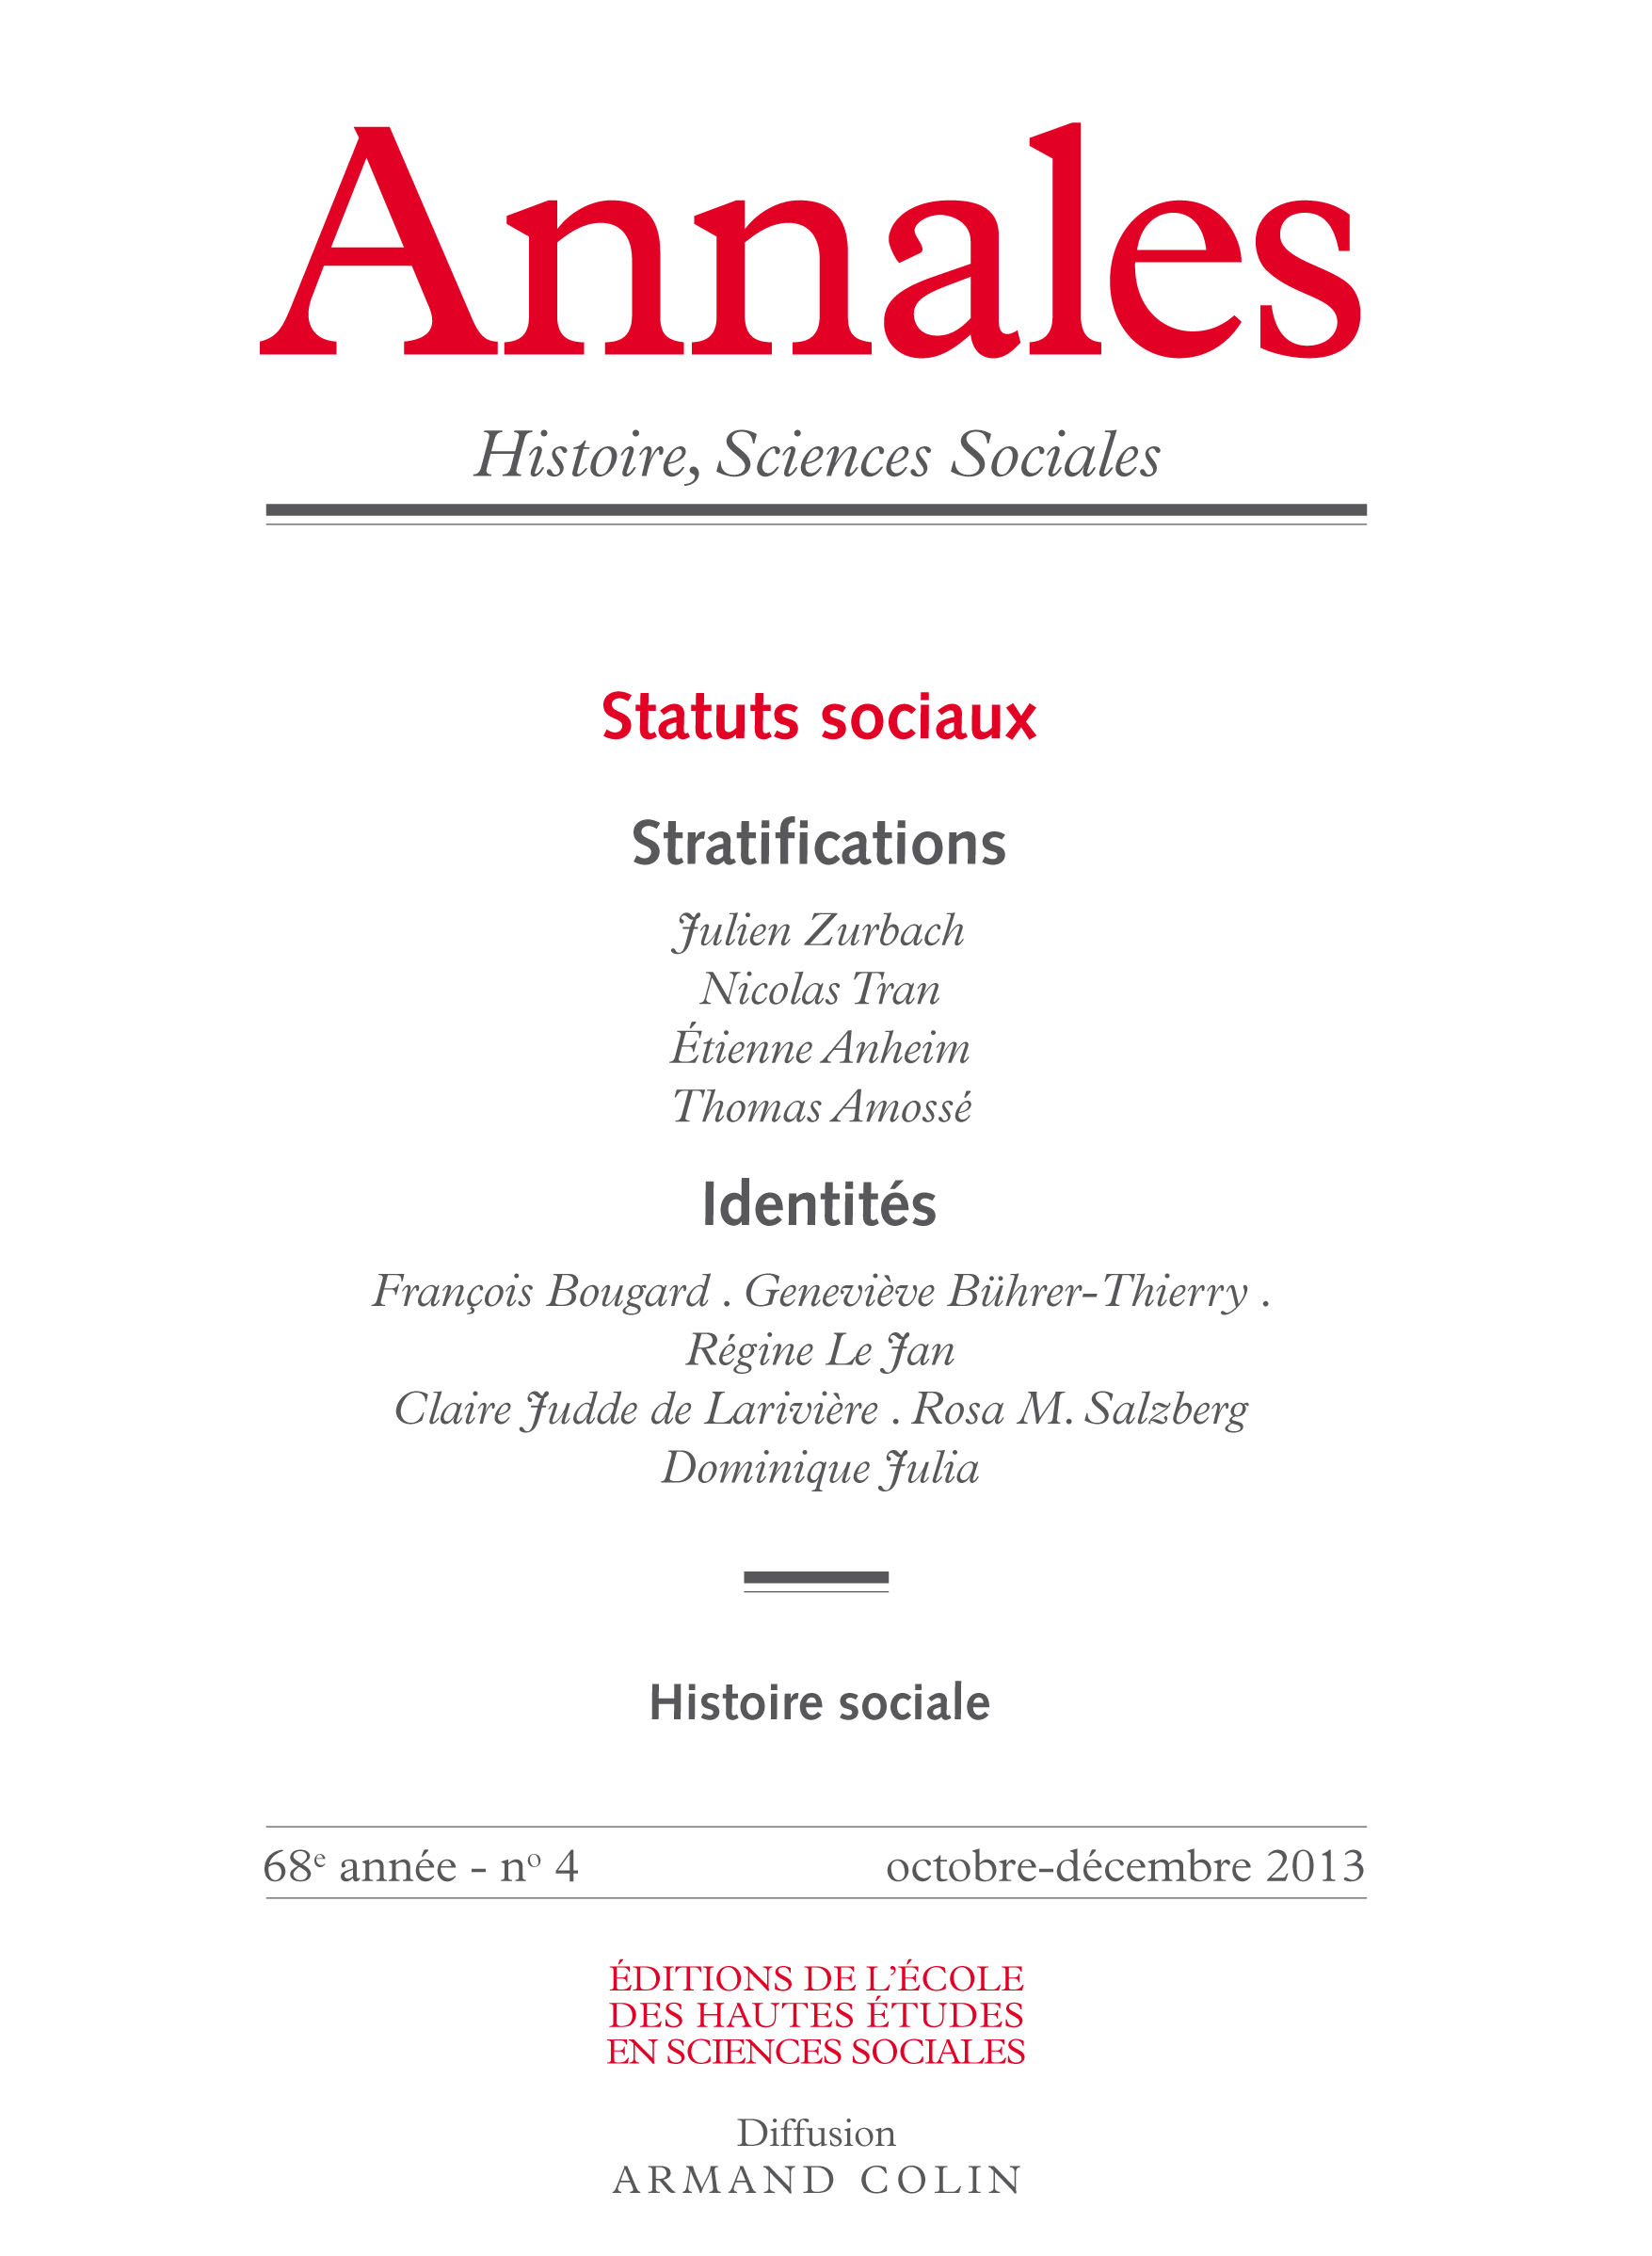 2013/4 - Statuts sociaux